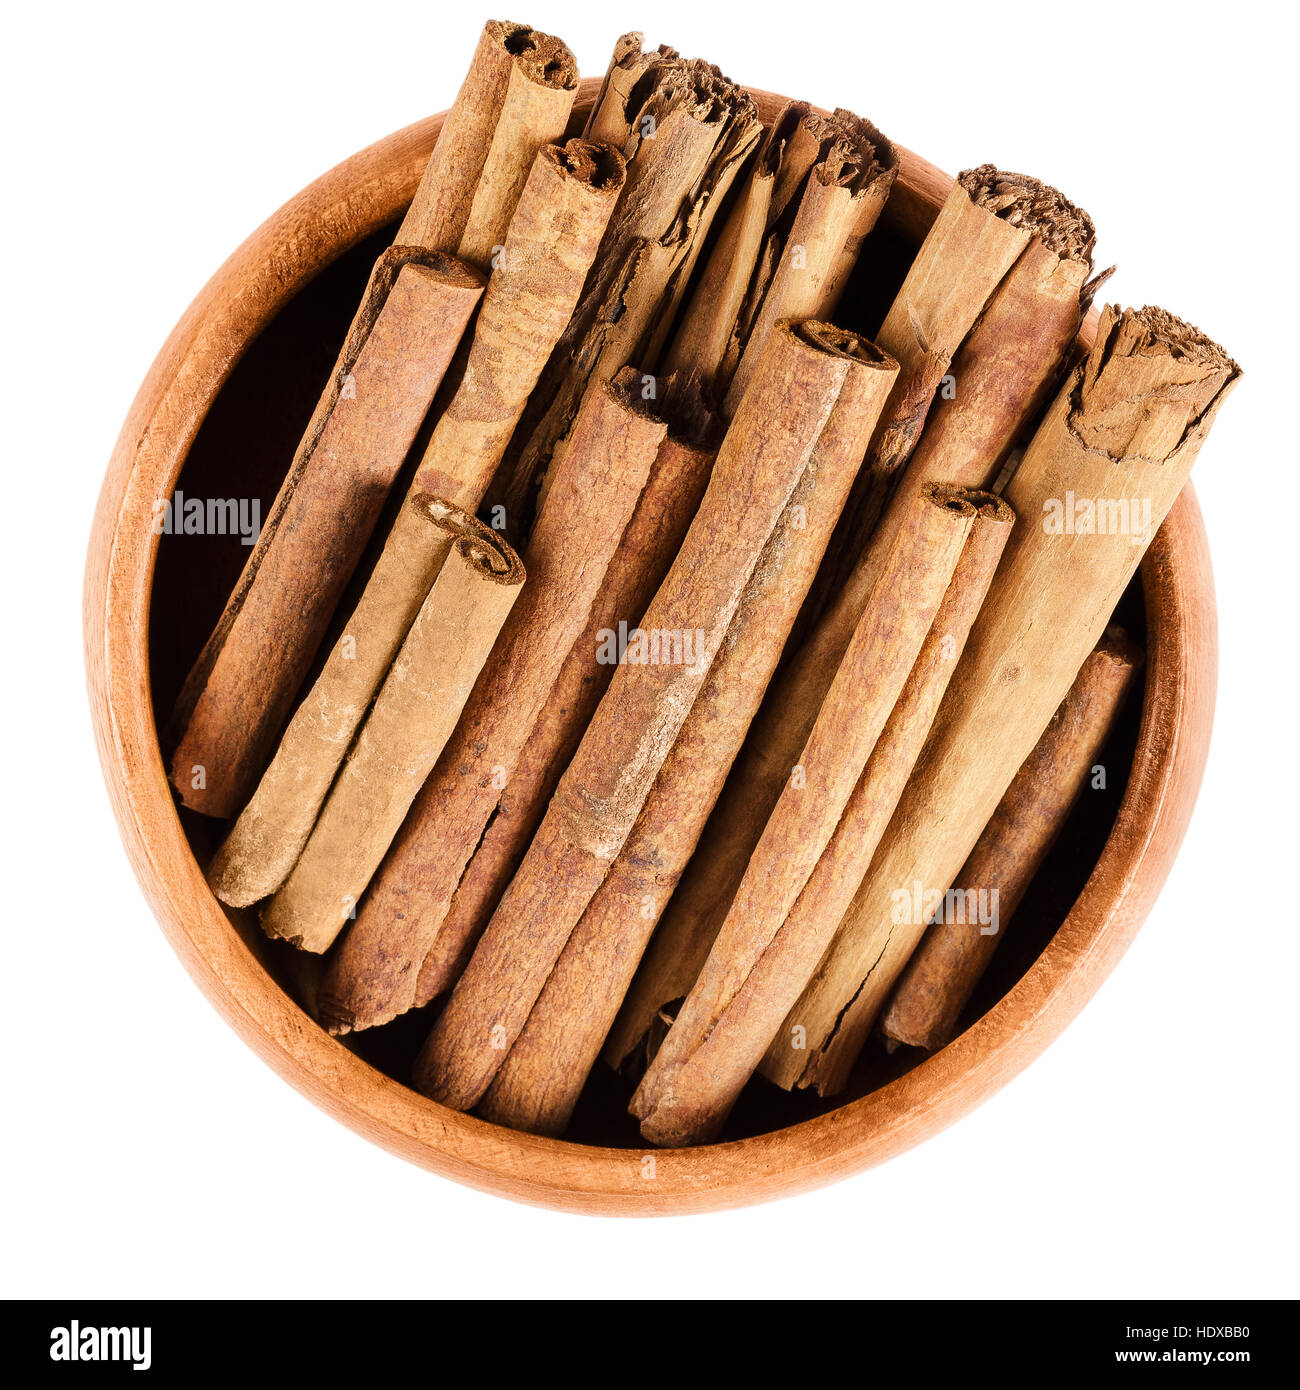 Zimtstangen in Holzschale. Rohe braune Stacheln aus inneren Rinde von Cinnamomum. Cassia, aromatische Gewürz als Gewürz verwendet. Stockfoto